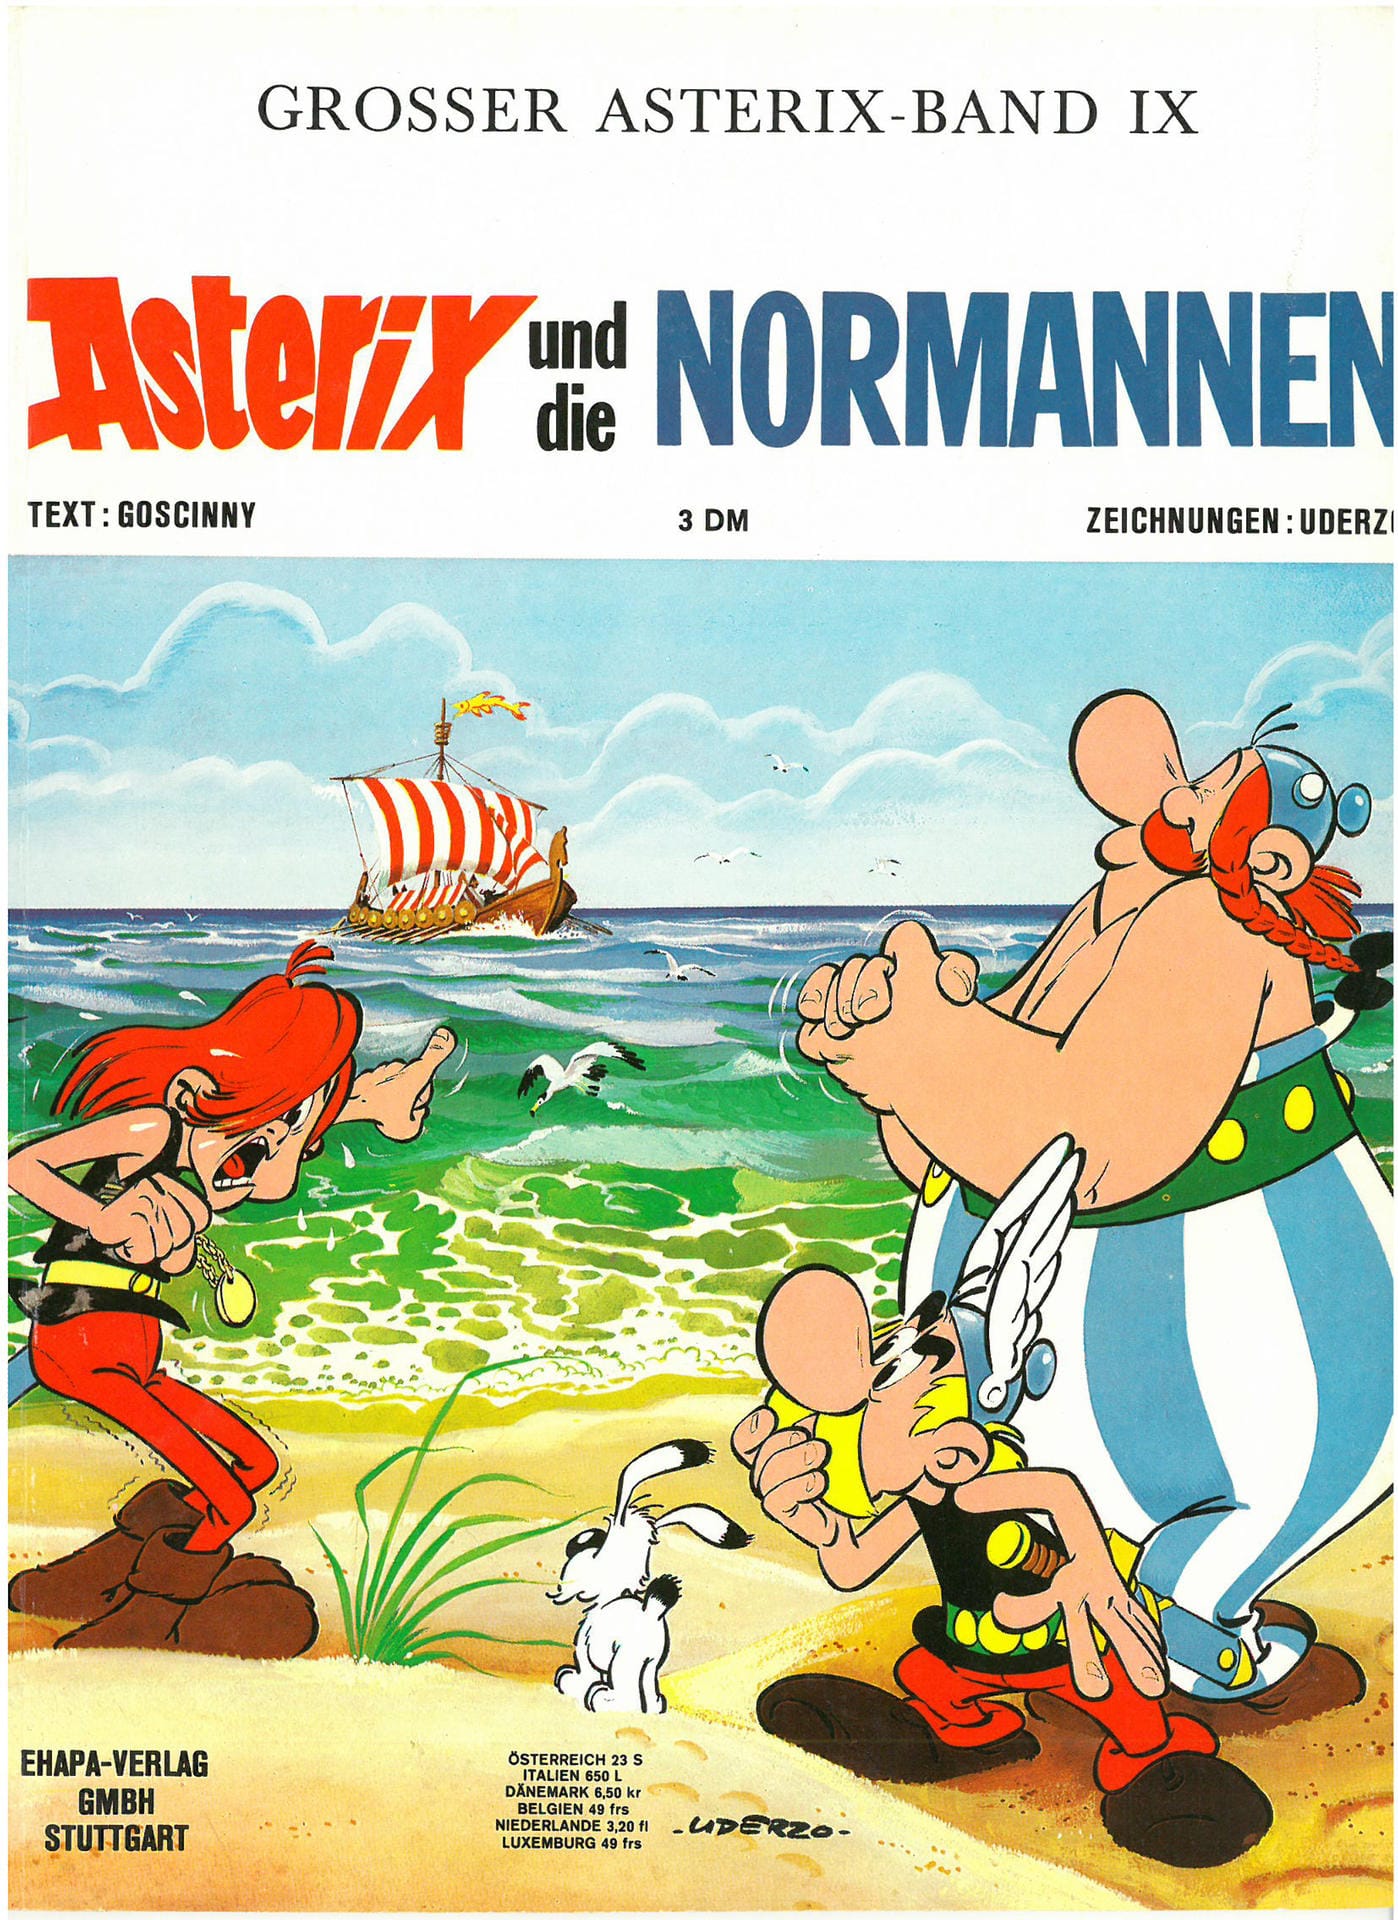 Die neunte Ausgabe: Asterix und die Normannen. Die Normannen wollen das Fürchten lernen und entführen daher einen Freund der Gallier. Asterix und Obelix machen sich auf, um ihn zu retten.